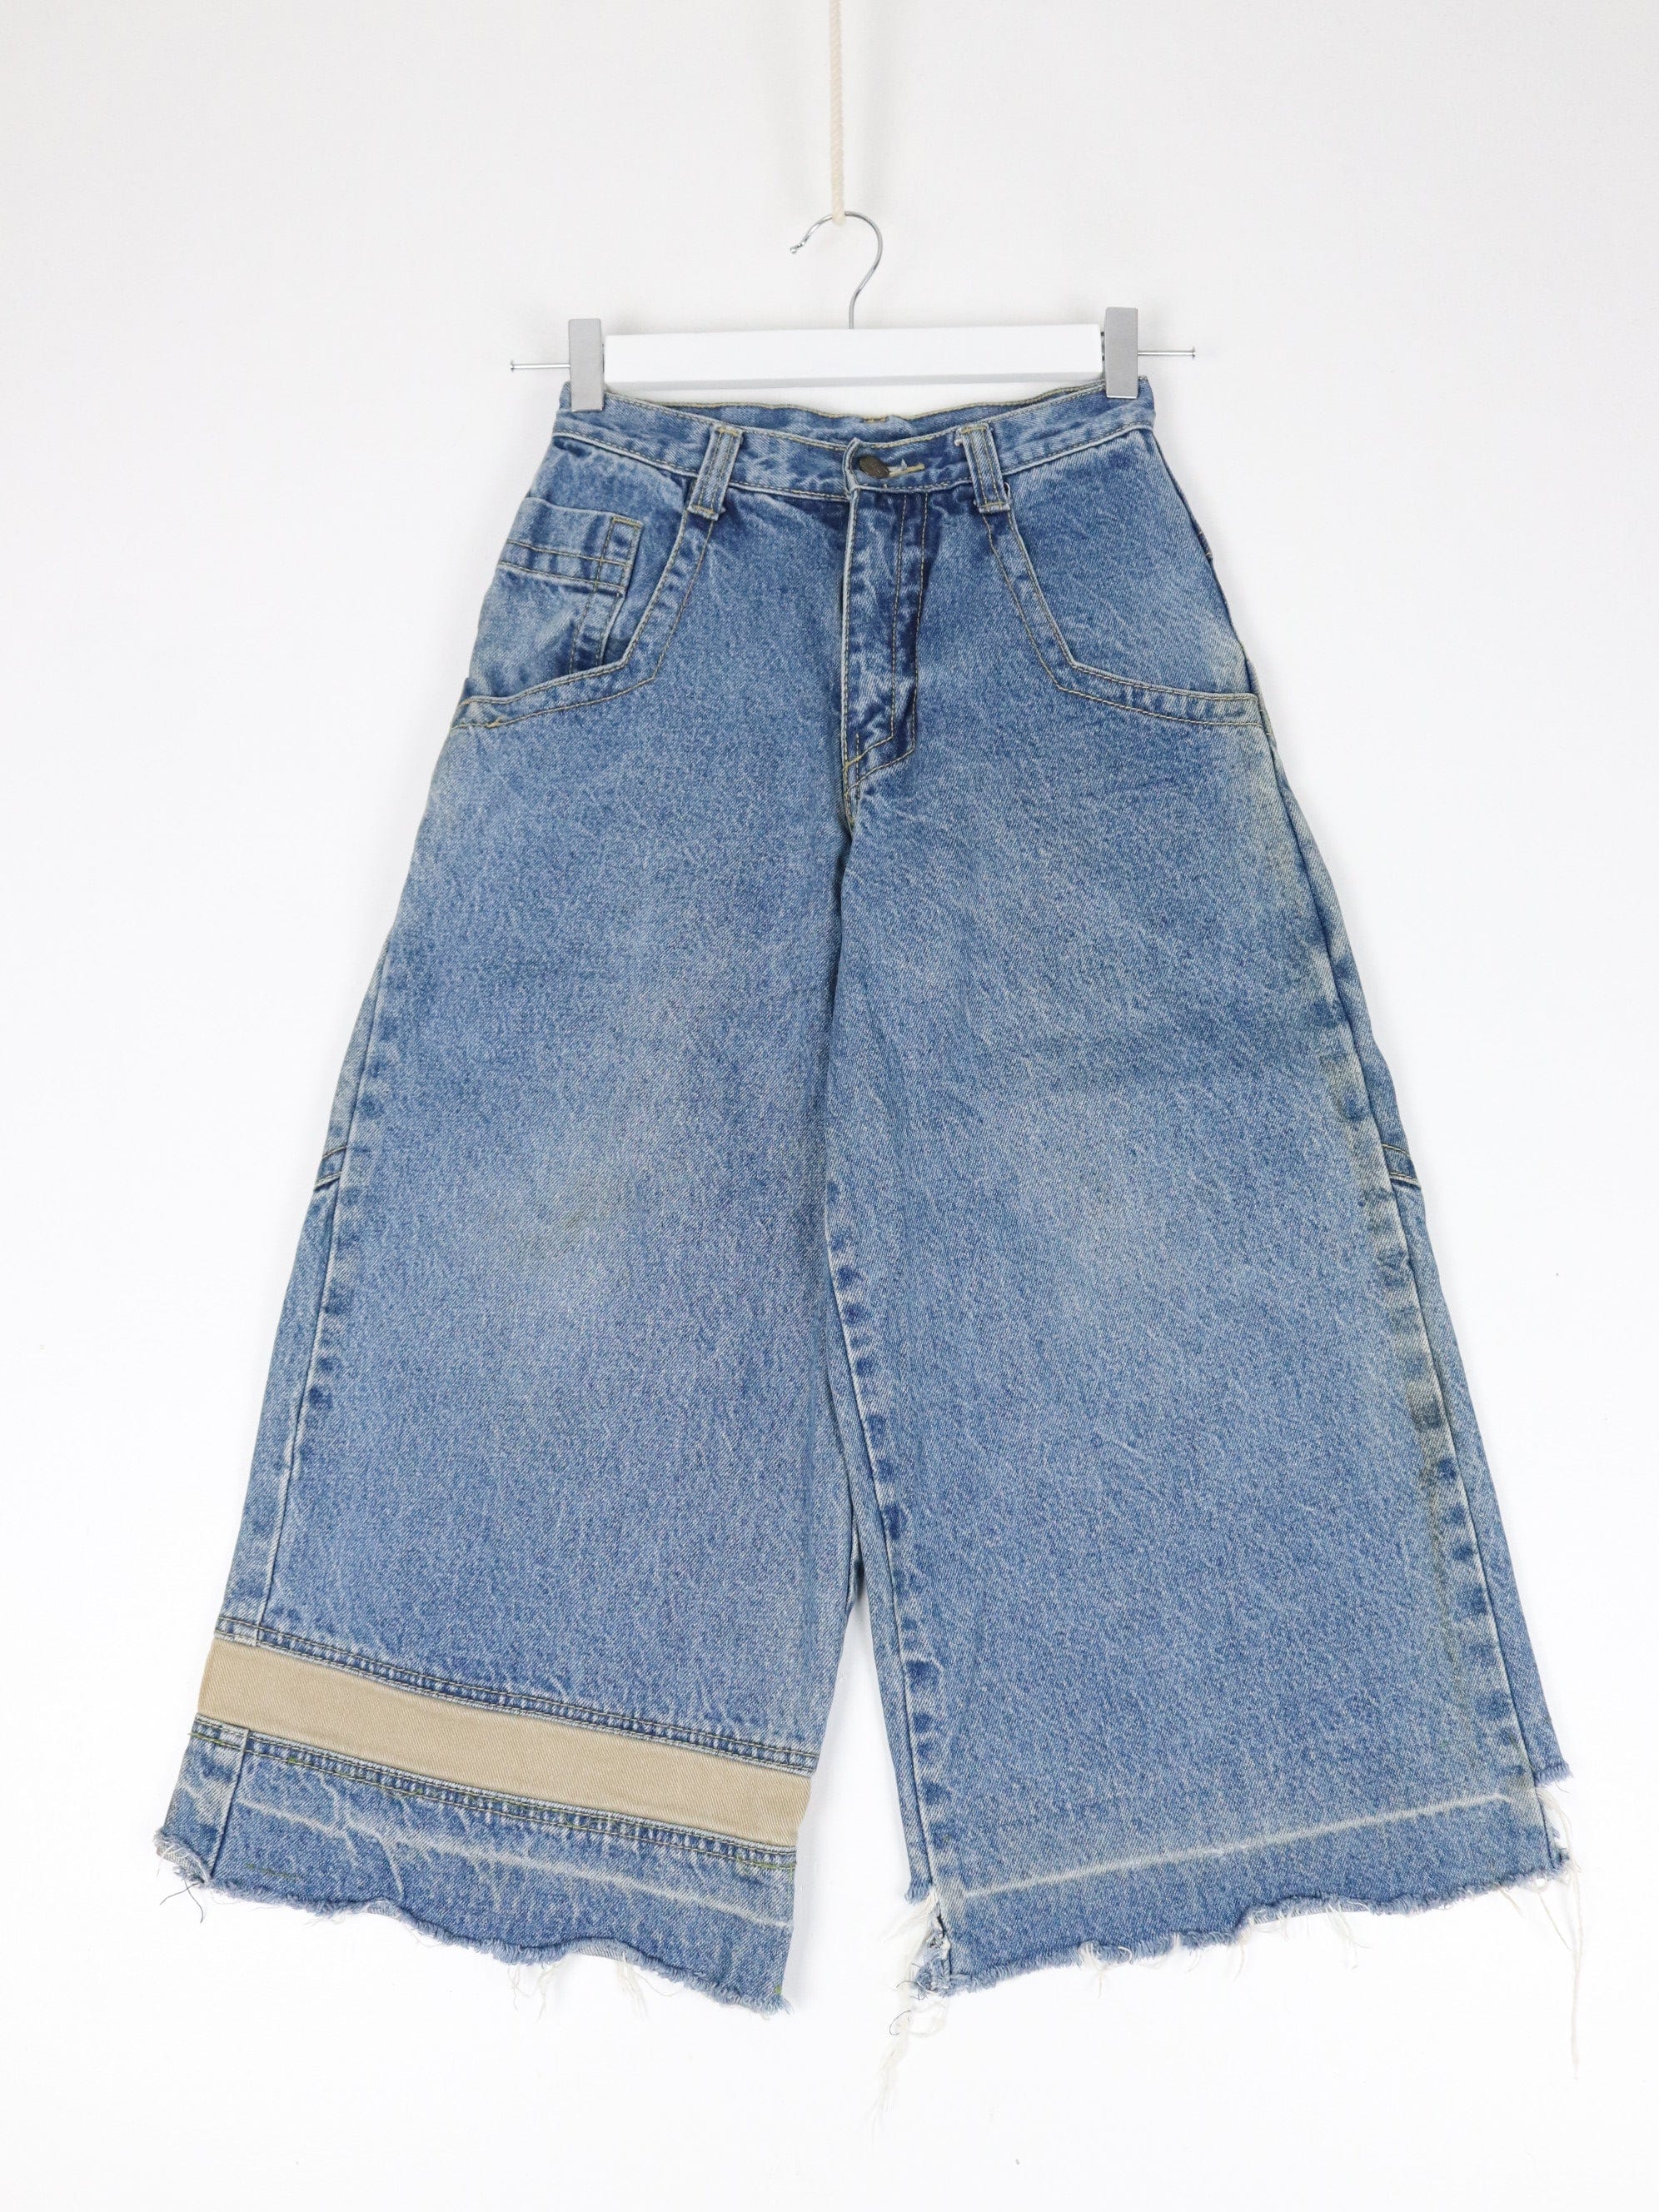 https://propervintagecanada.com/cdn/shop/files/other-jeans-vintage-urban-pants-youth-10-blue-denim-jeans-y2k-24-x-21-31721708847163.jpg?v=1702164741